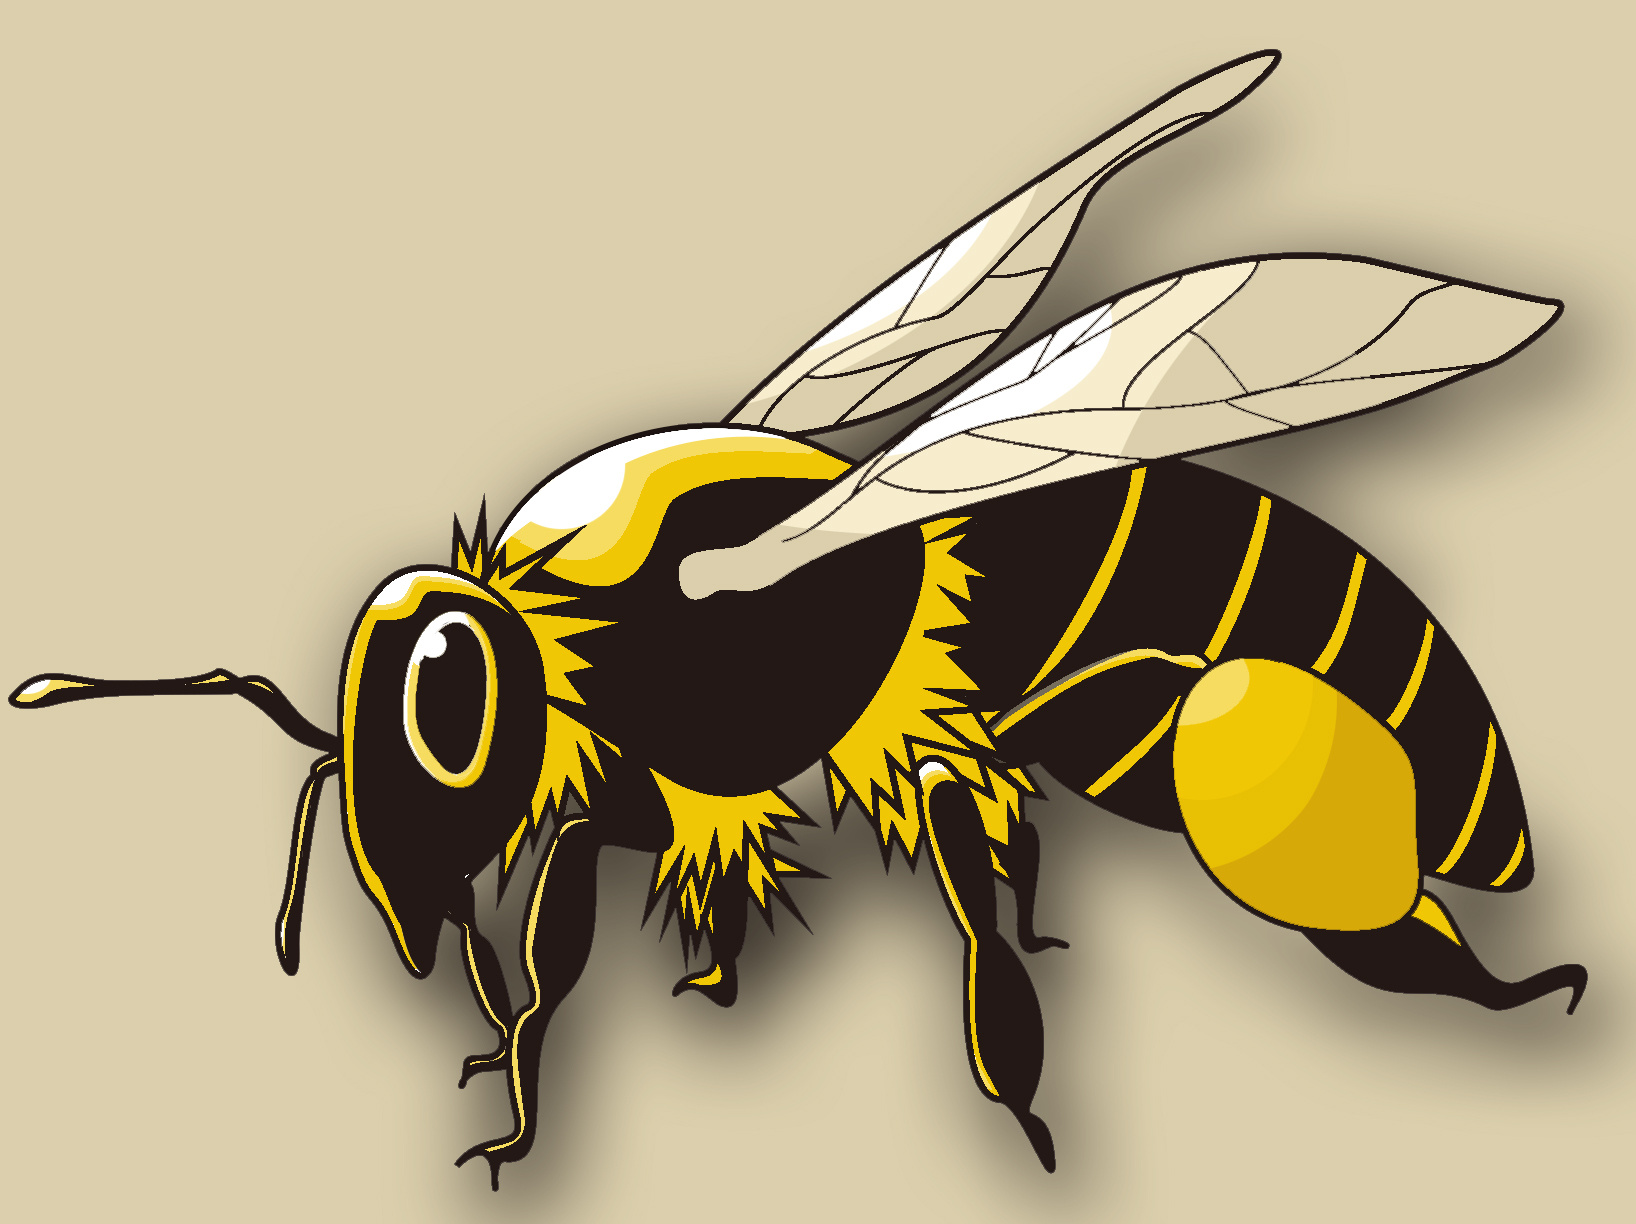 蜜蜂卡通可爱图片-蜜蜂卡通可爱素材免费下载-包图网